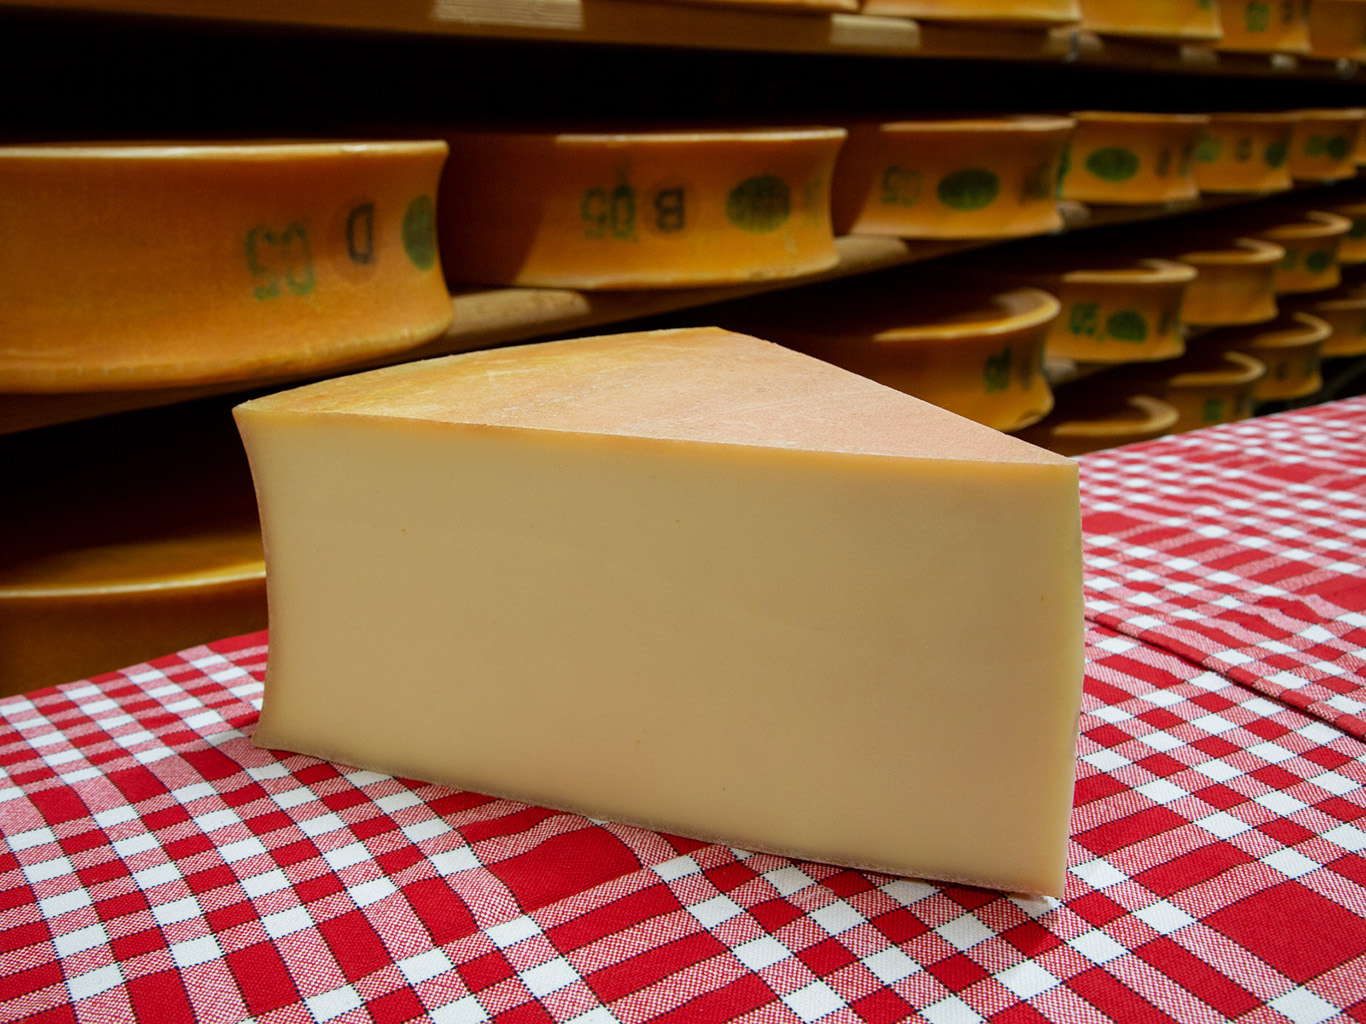 Beaufort je jeden ze sýrů, který má v savojské kuchyni hojné využití